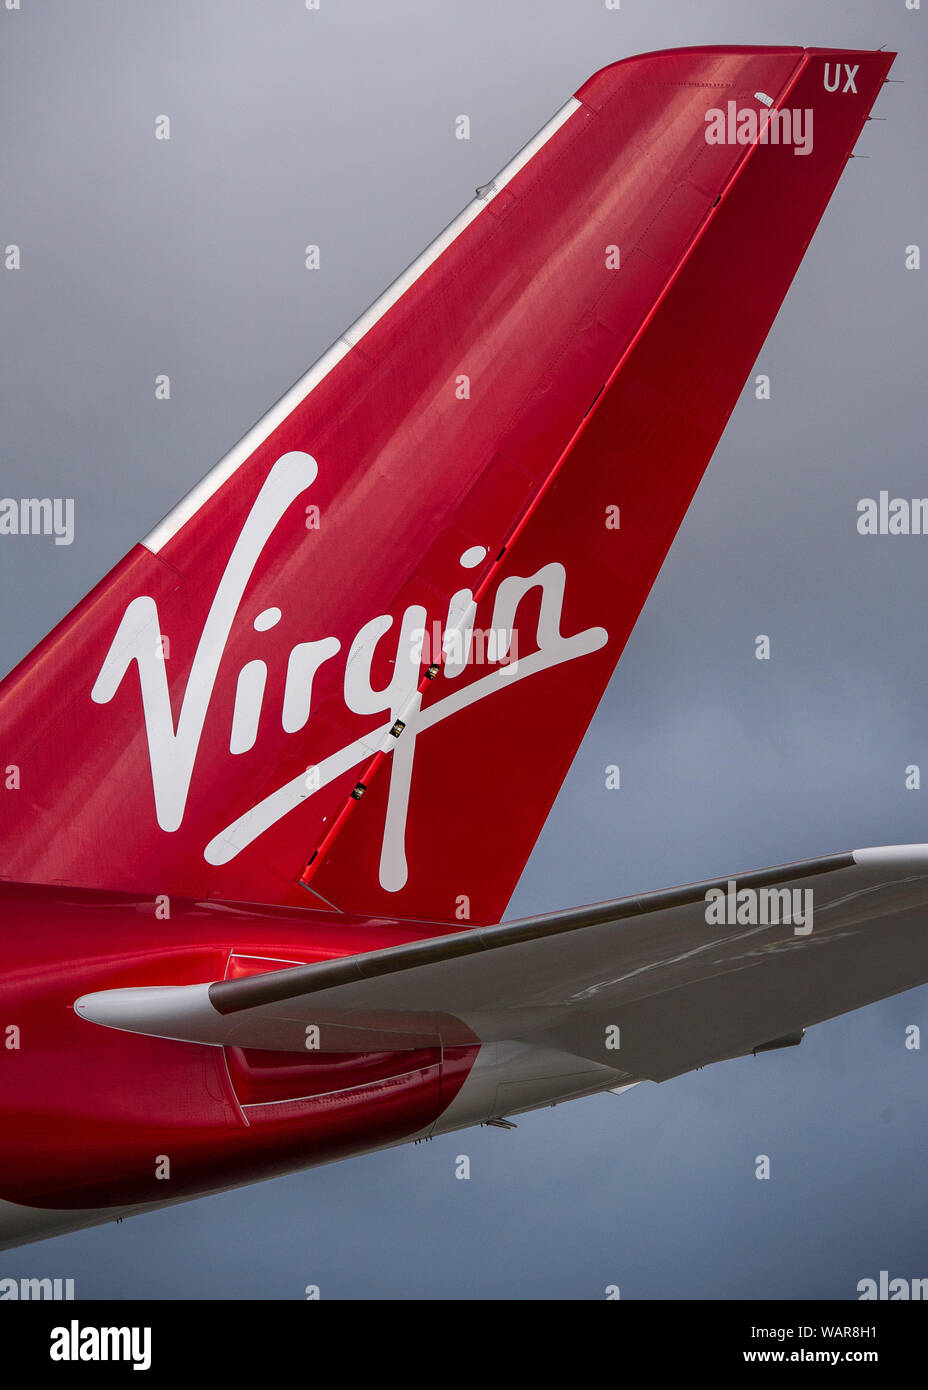 Glasgow, UK. 21. August 2019. Virgin Atlantic Airbus A350-1000 Flugzeug am Internationalen Flughafen Glasgow für Pilot Training gesehen. Die Marke Virgin neuen Jumbo Jet bietet sozialen eine erstaunliche neue "Loft" Raum mit Sofas in der Business Class, und treffend die Registrierung G-VLUX geschmückt. Das gesamte Flugzeug haben auch Zugang zu High-Speed-WLAN. Virgin Atlantic hat insgesamt 12 Airbus A350-1000 s. Sie sind alle geplanten die Flotte bis 2021 melden Sie in eine Bestellung im Wert von schätzungsweise $ 4,4 Mrd. £ (3,36 Mrd. Euro). Das Flugzeug verspricht auch zu 30% sparsamer Einsparung von CO2-Emissionen. Stockfoto